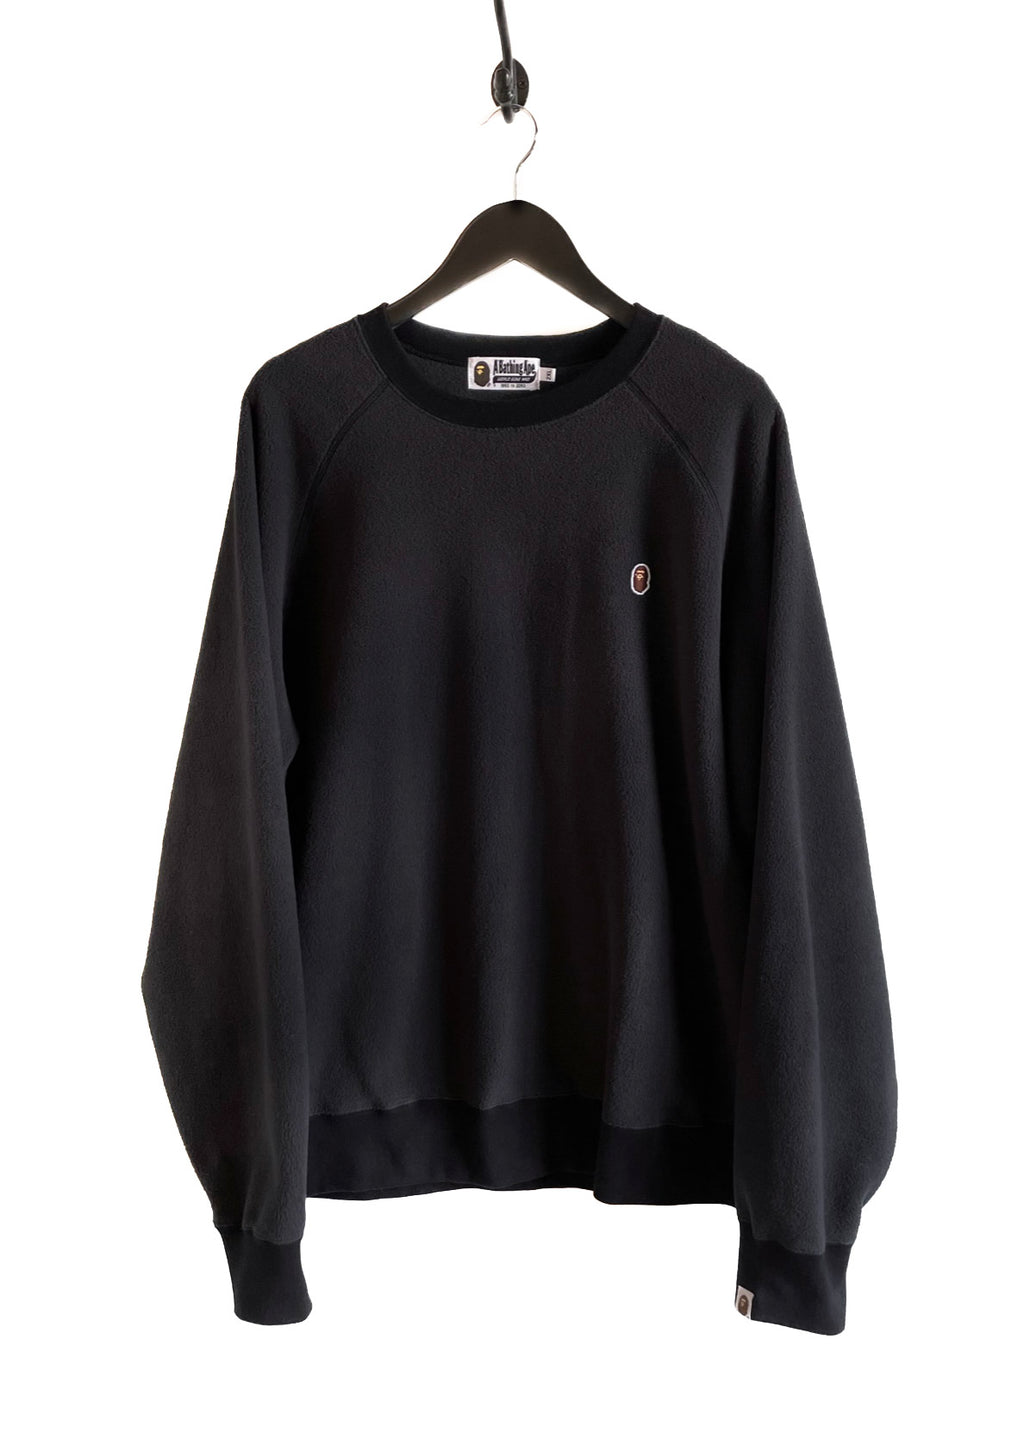 Bape Black Fleece Sweatshirt